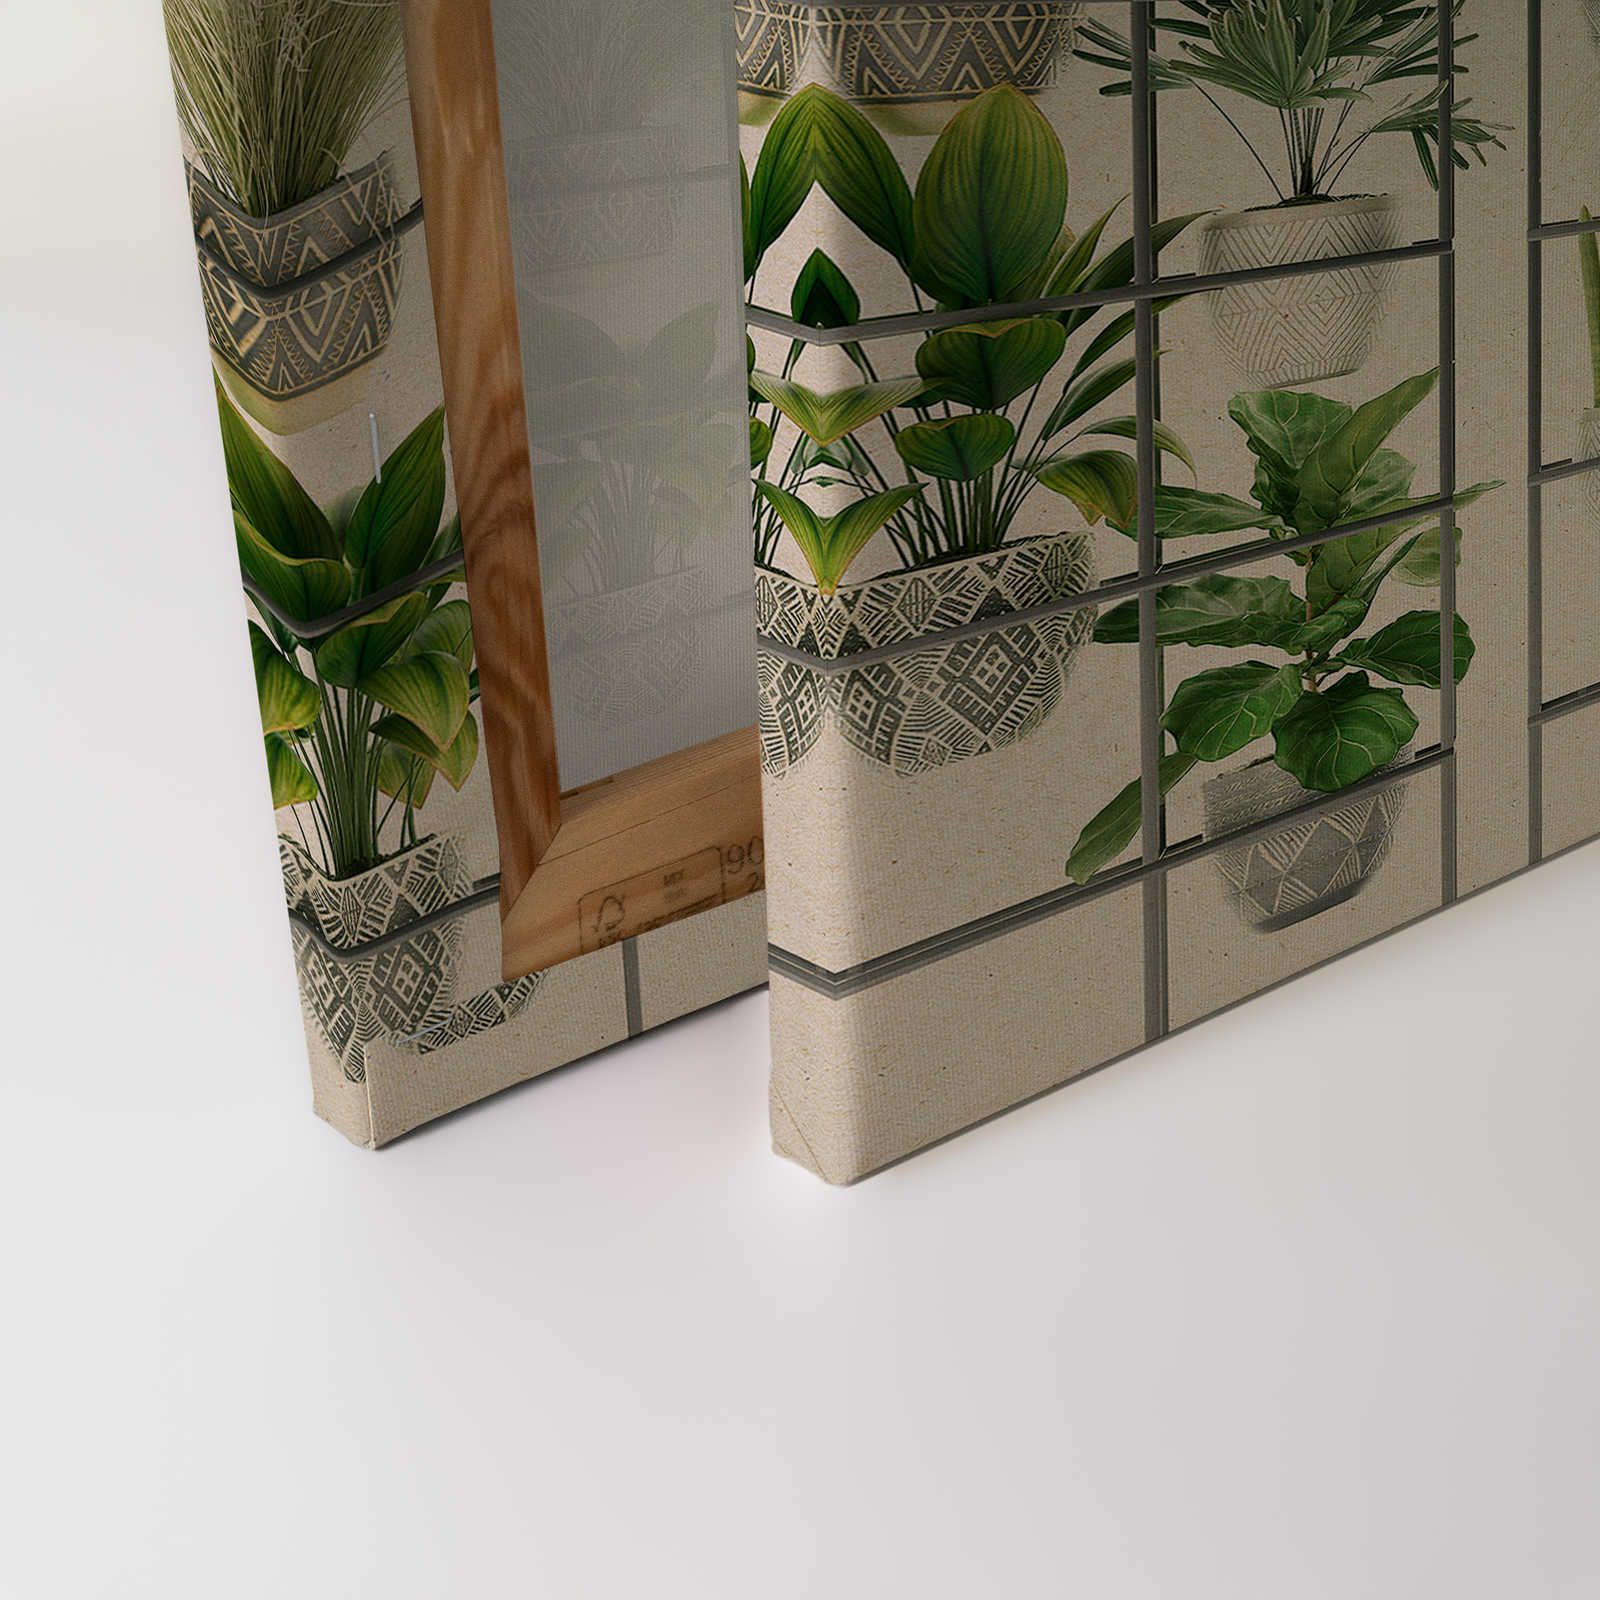             Plant Shop 2 - Leinwandbild moderne Pflanzenwand in Grün & Grau – 0,90 m x 0,60 m
        